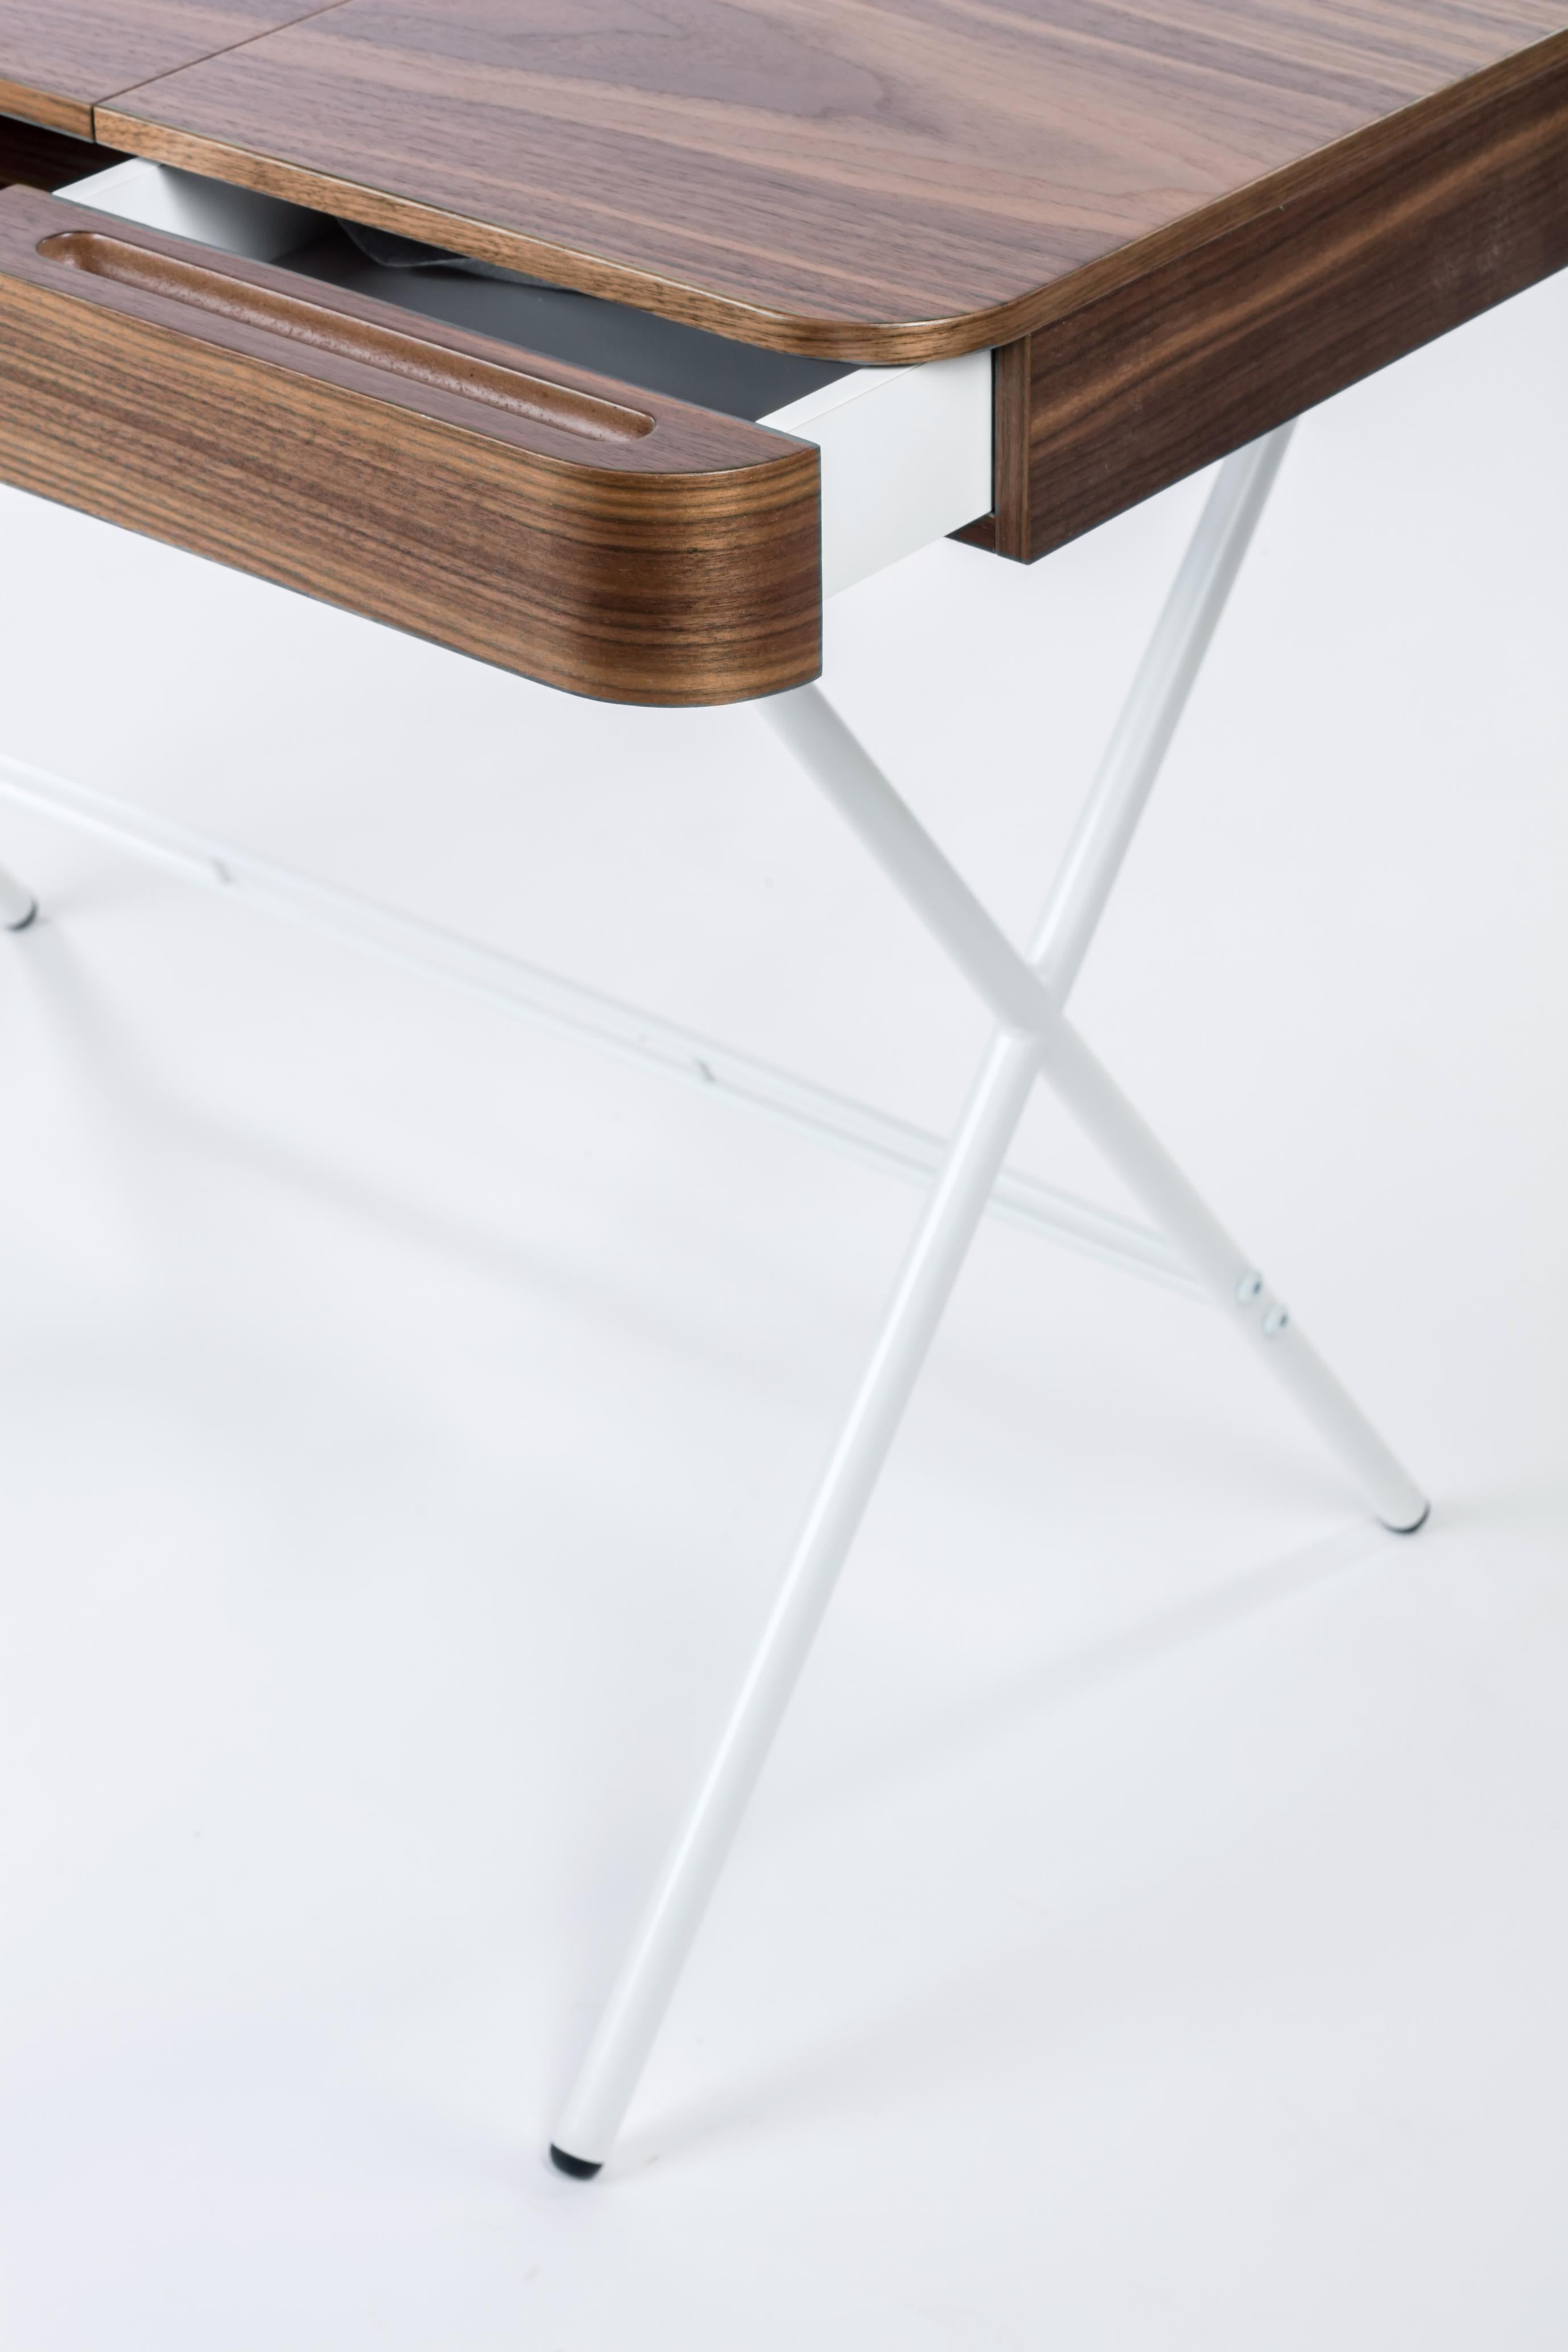 Contemporary Adentro Cosimo Desk design Marco Zanuso jr Walnut veneer & white base.  For Sale